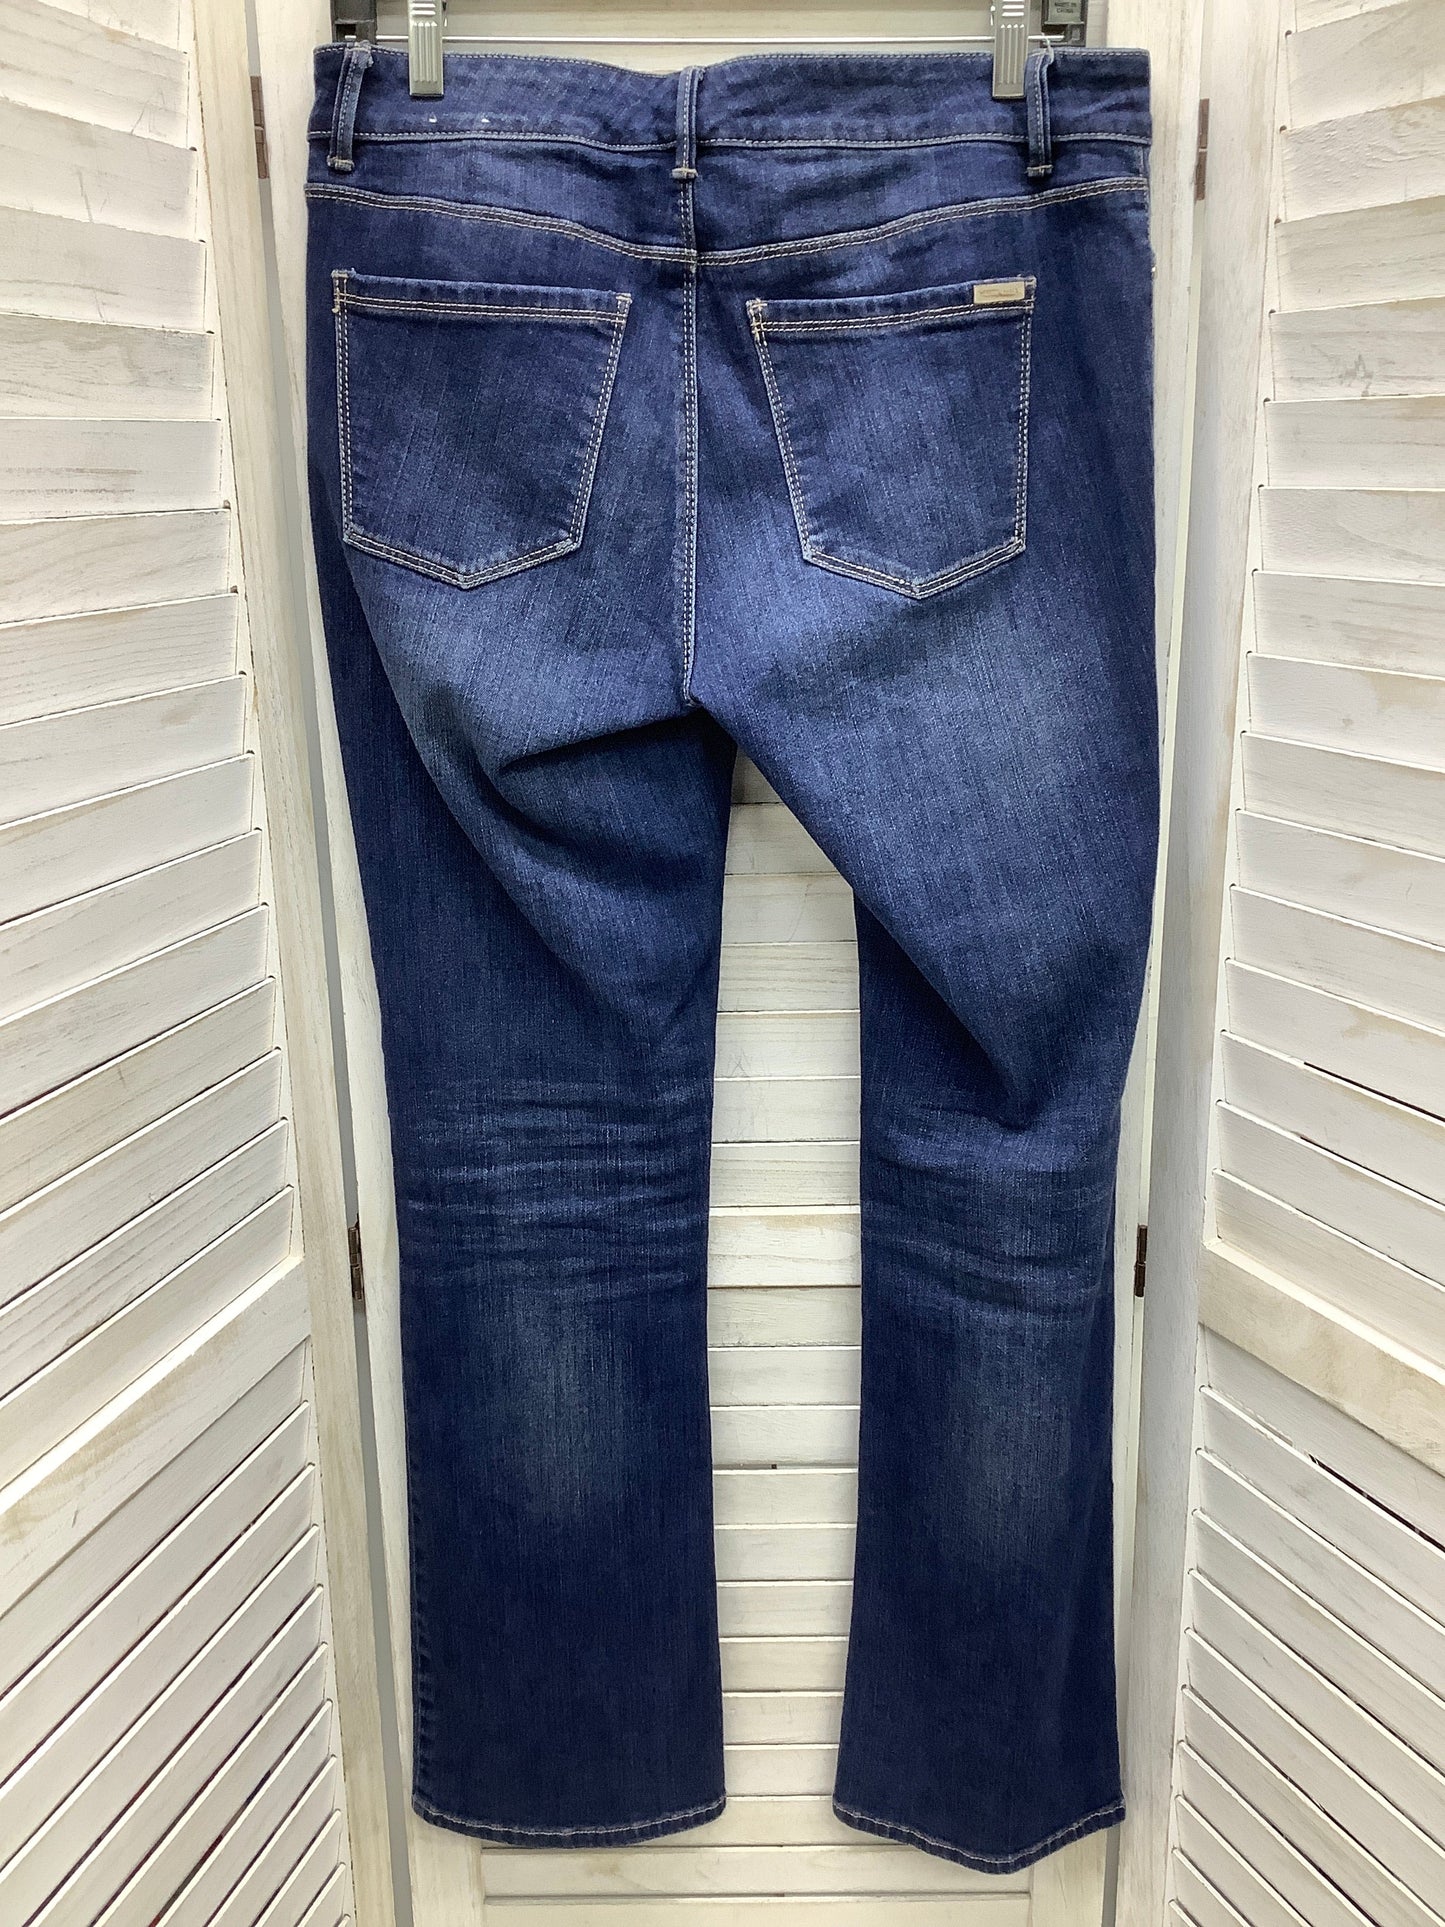 Blue Denim Jeans Boot Cut White House Black Market, Size 6